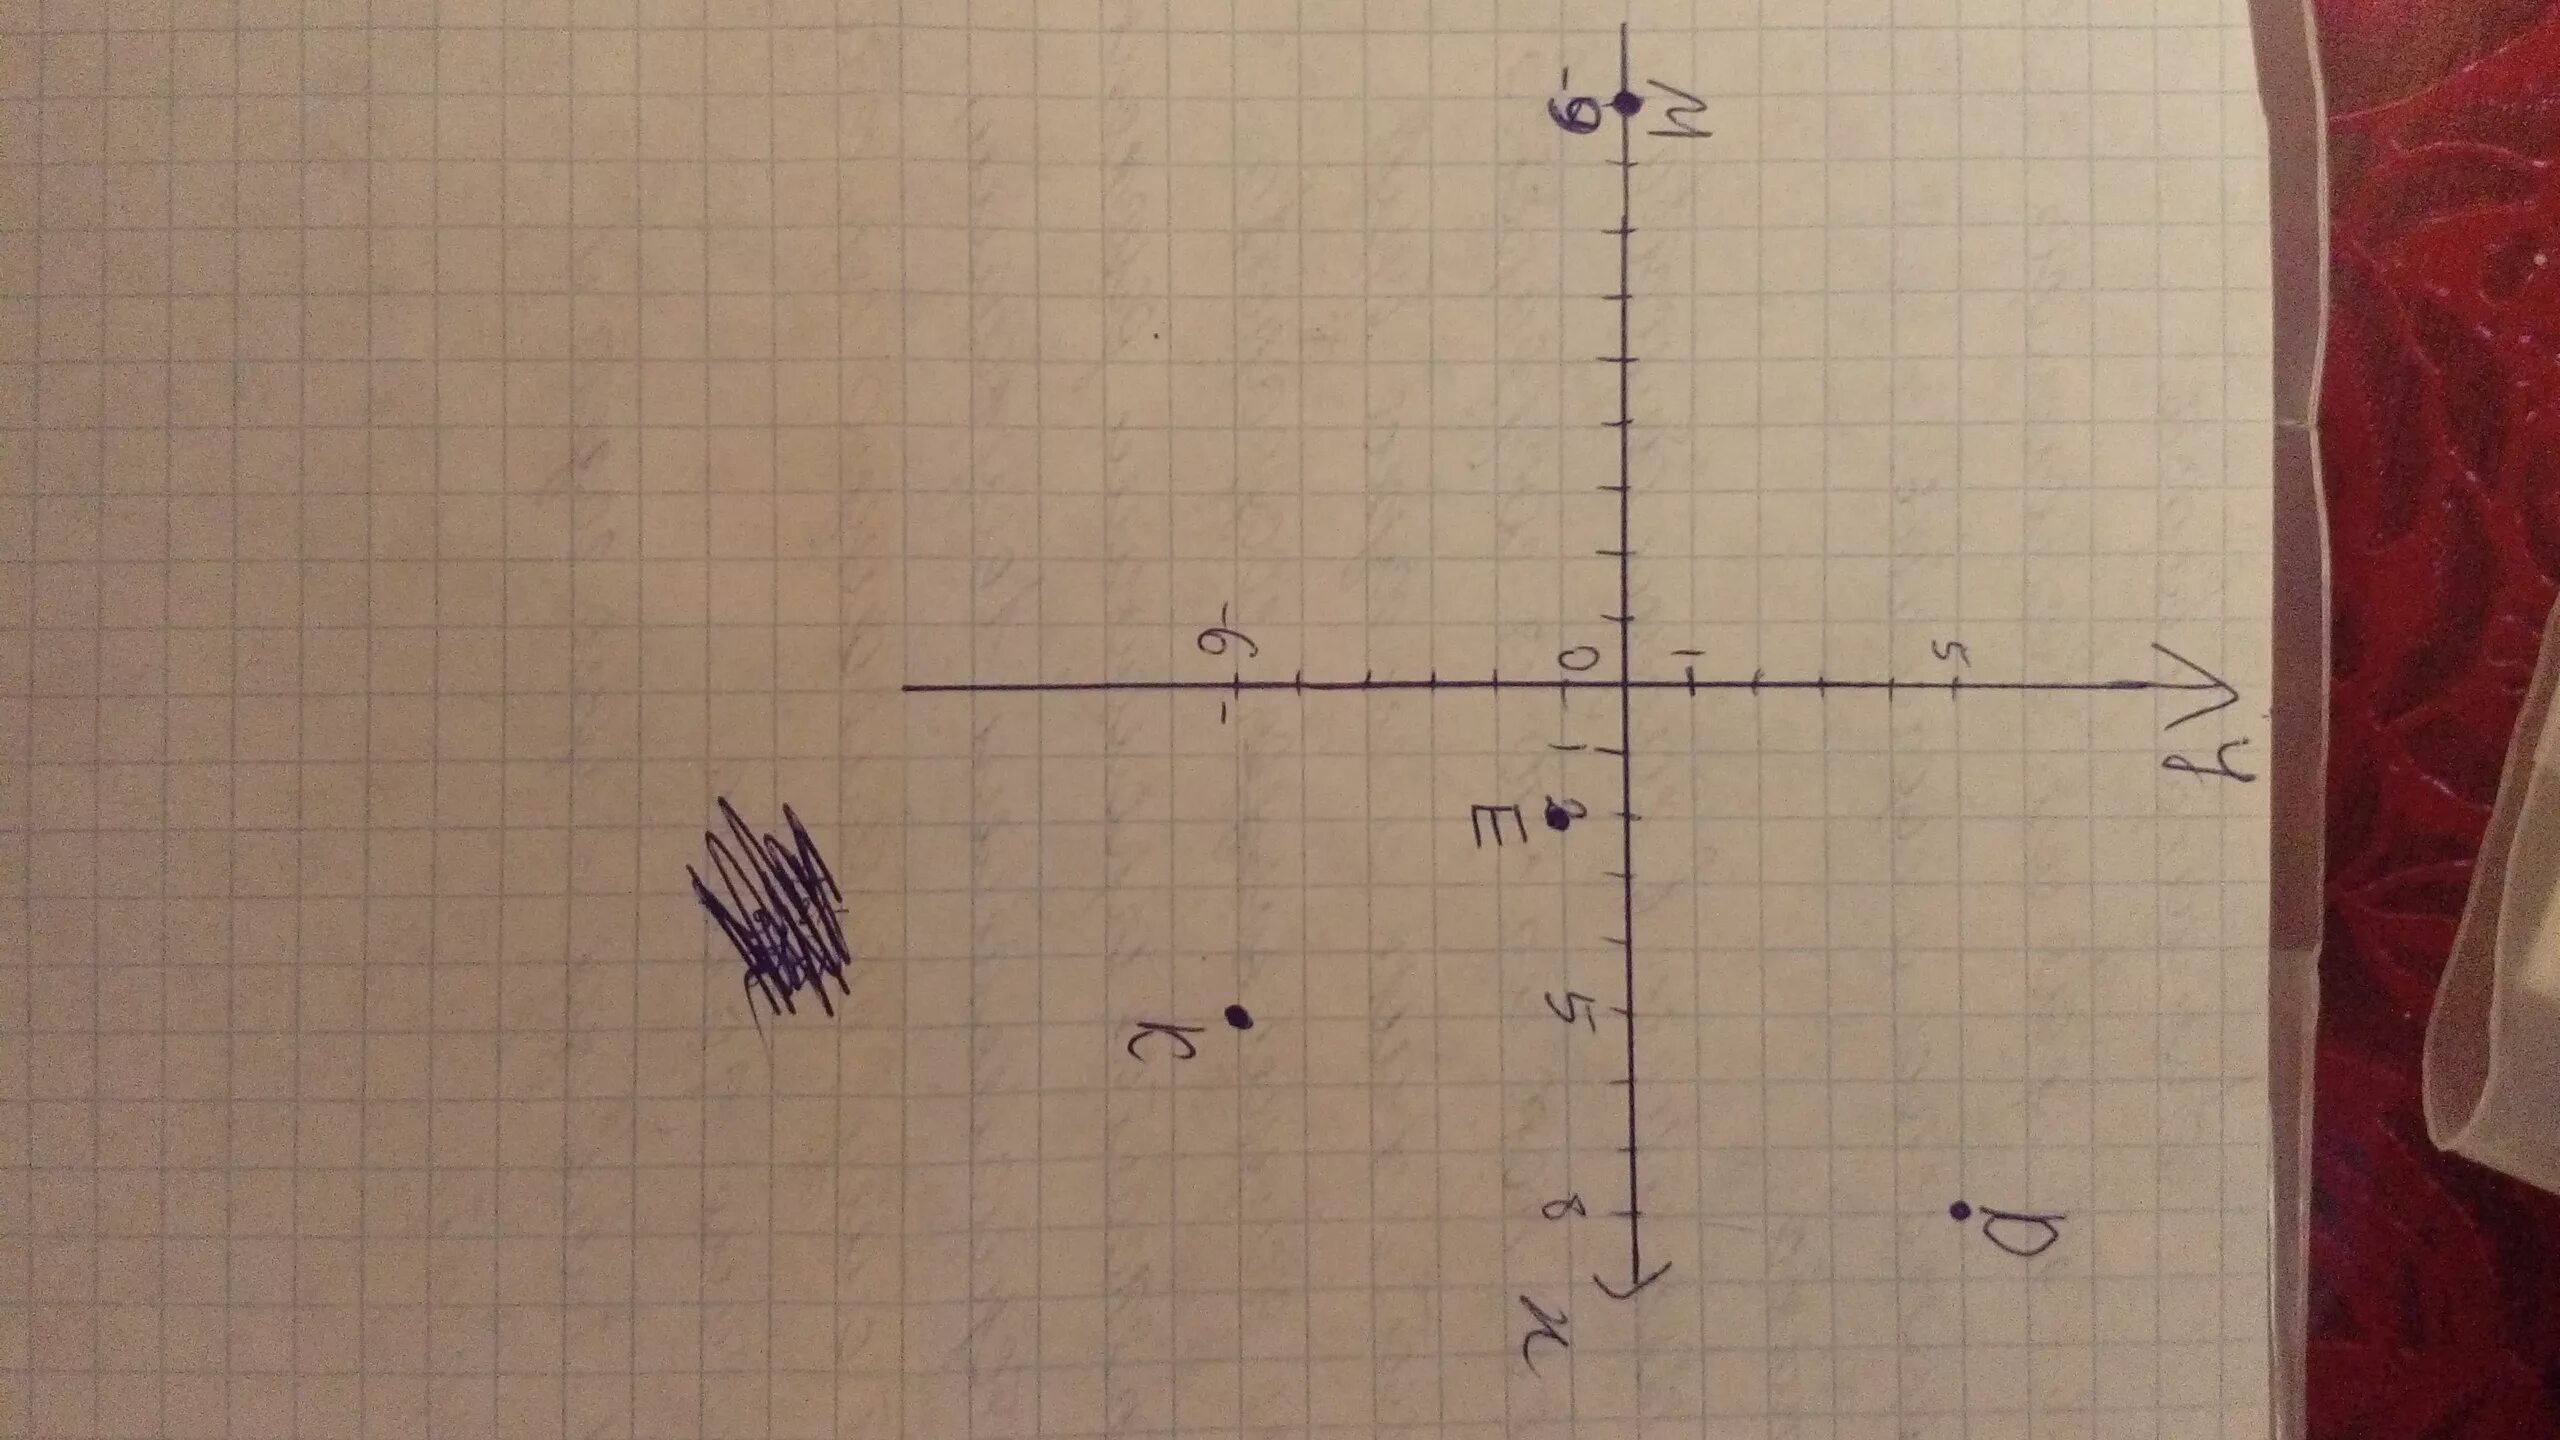 Отметьте на координатной плоскости точки 2 5. Отметьте на координатной плоскости точки m. Отметьте на координатной плоскости точки m (05. Координатная плоскость отметь точки 8,5;. Отметь на координатной плоскости точки м (-1, 6).